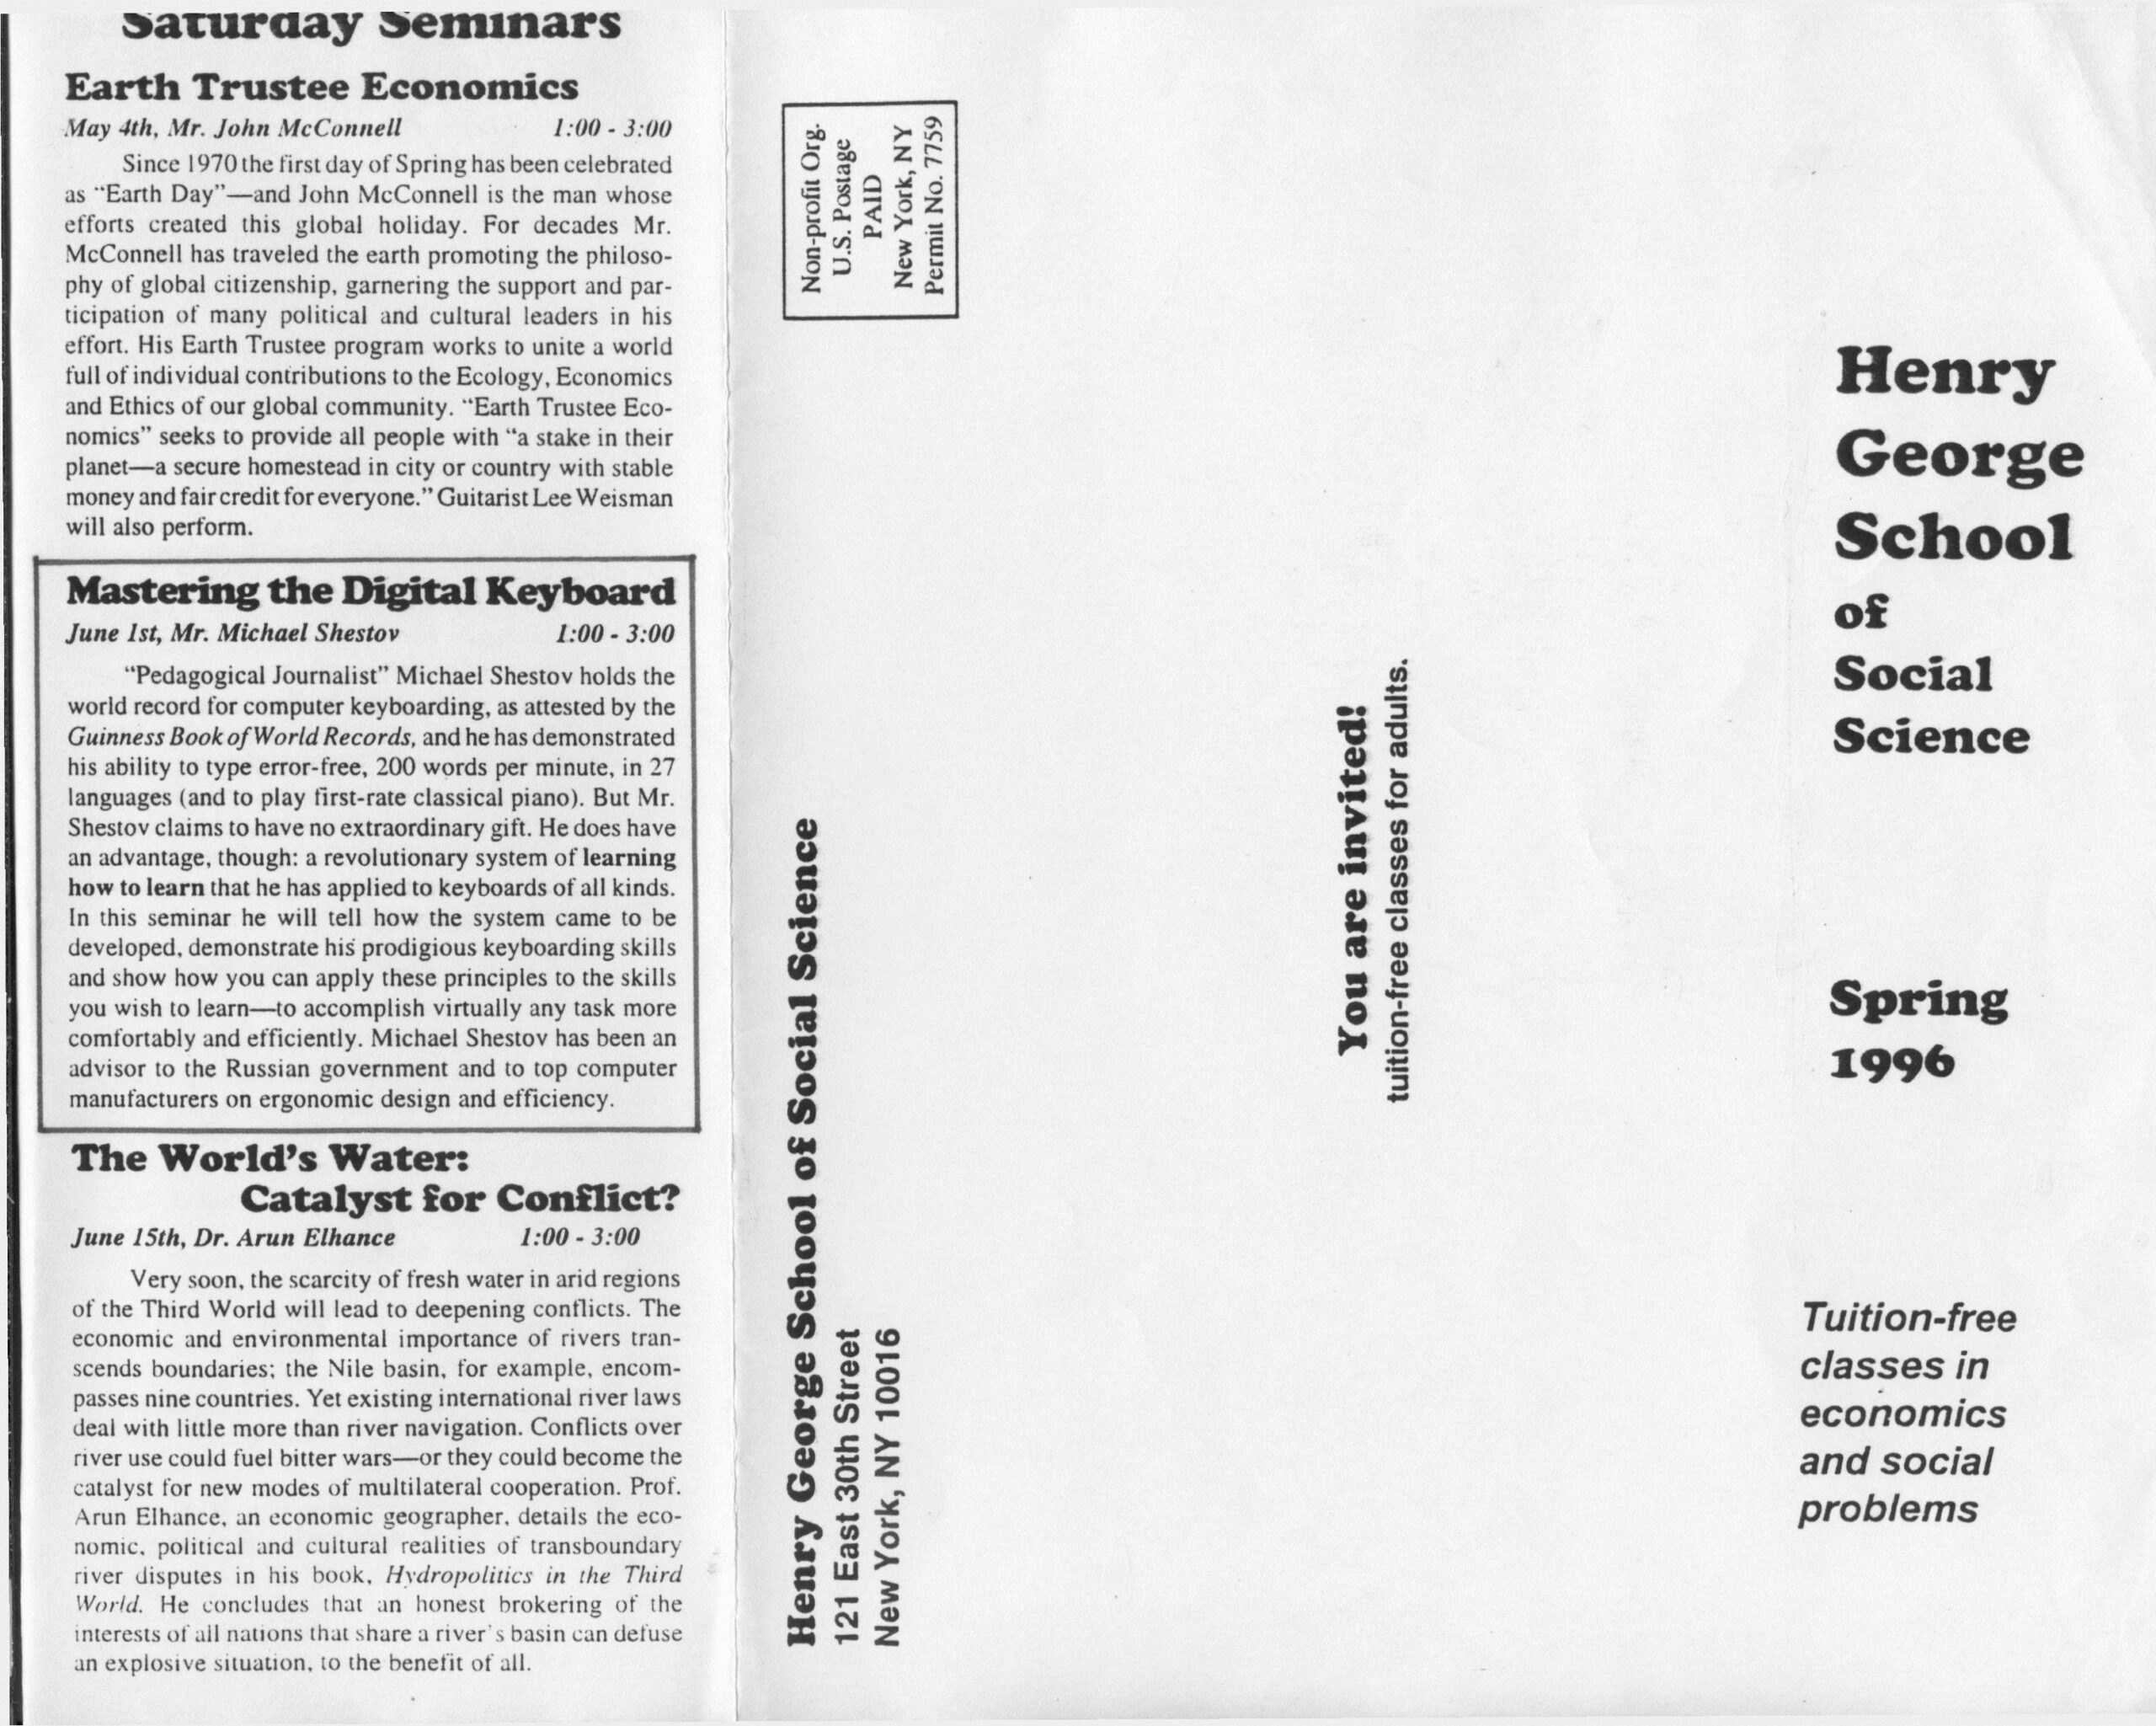 Henry George School of Social Science, 1996